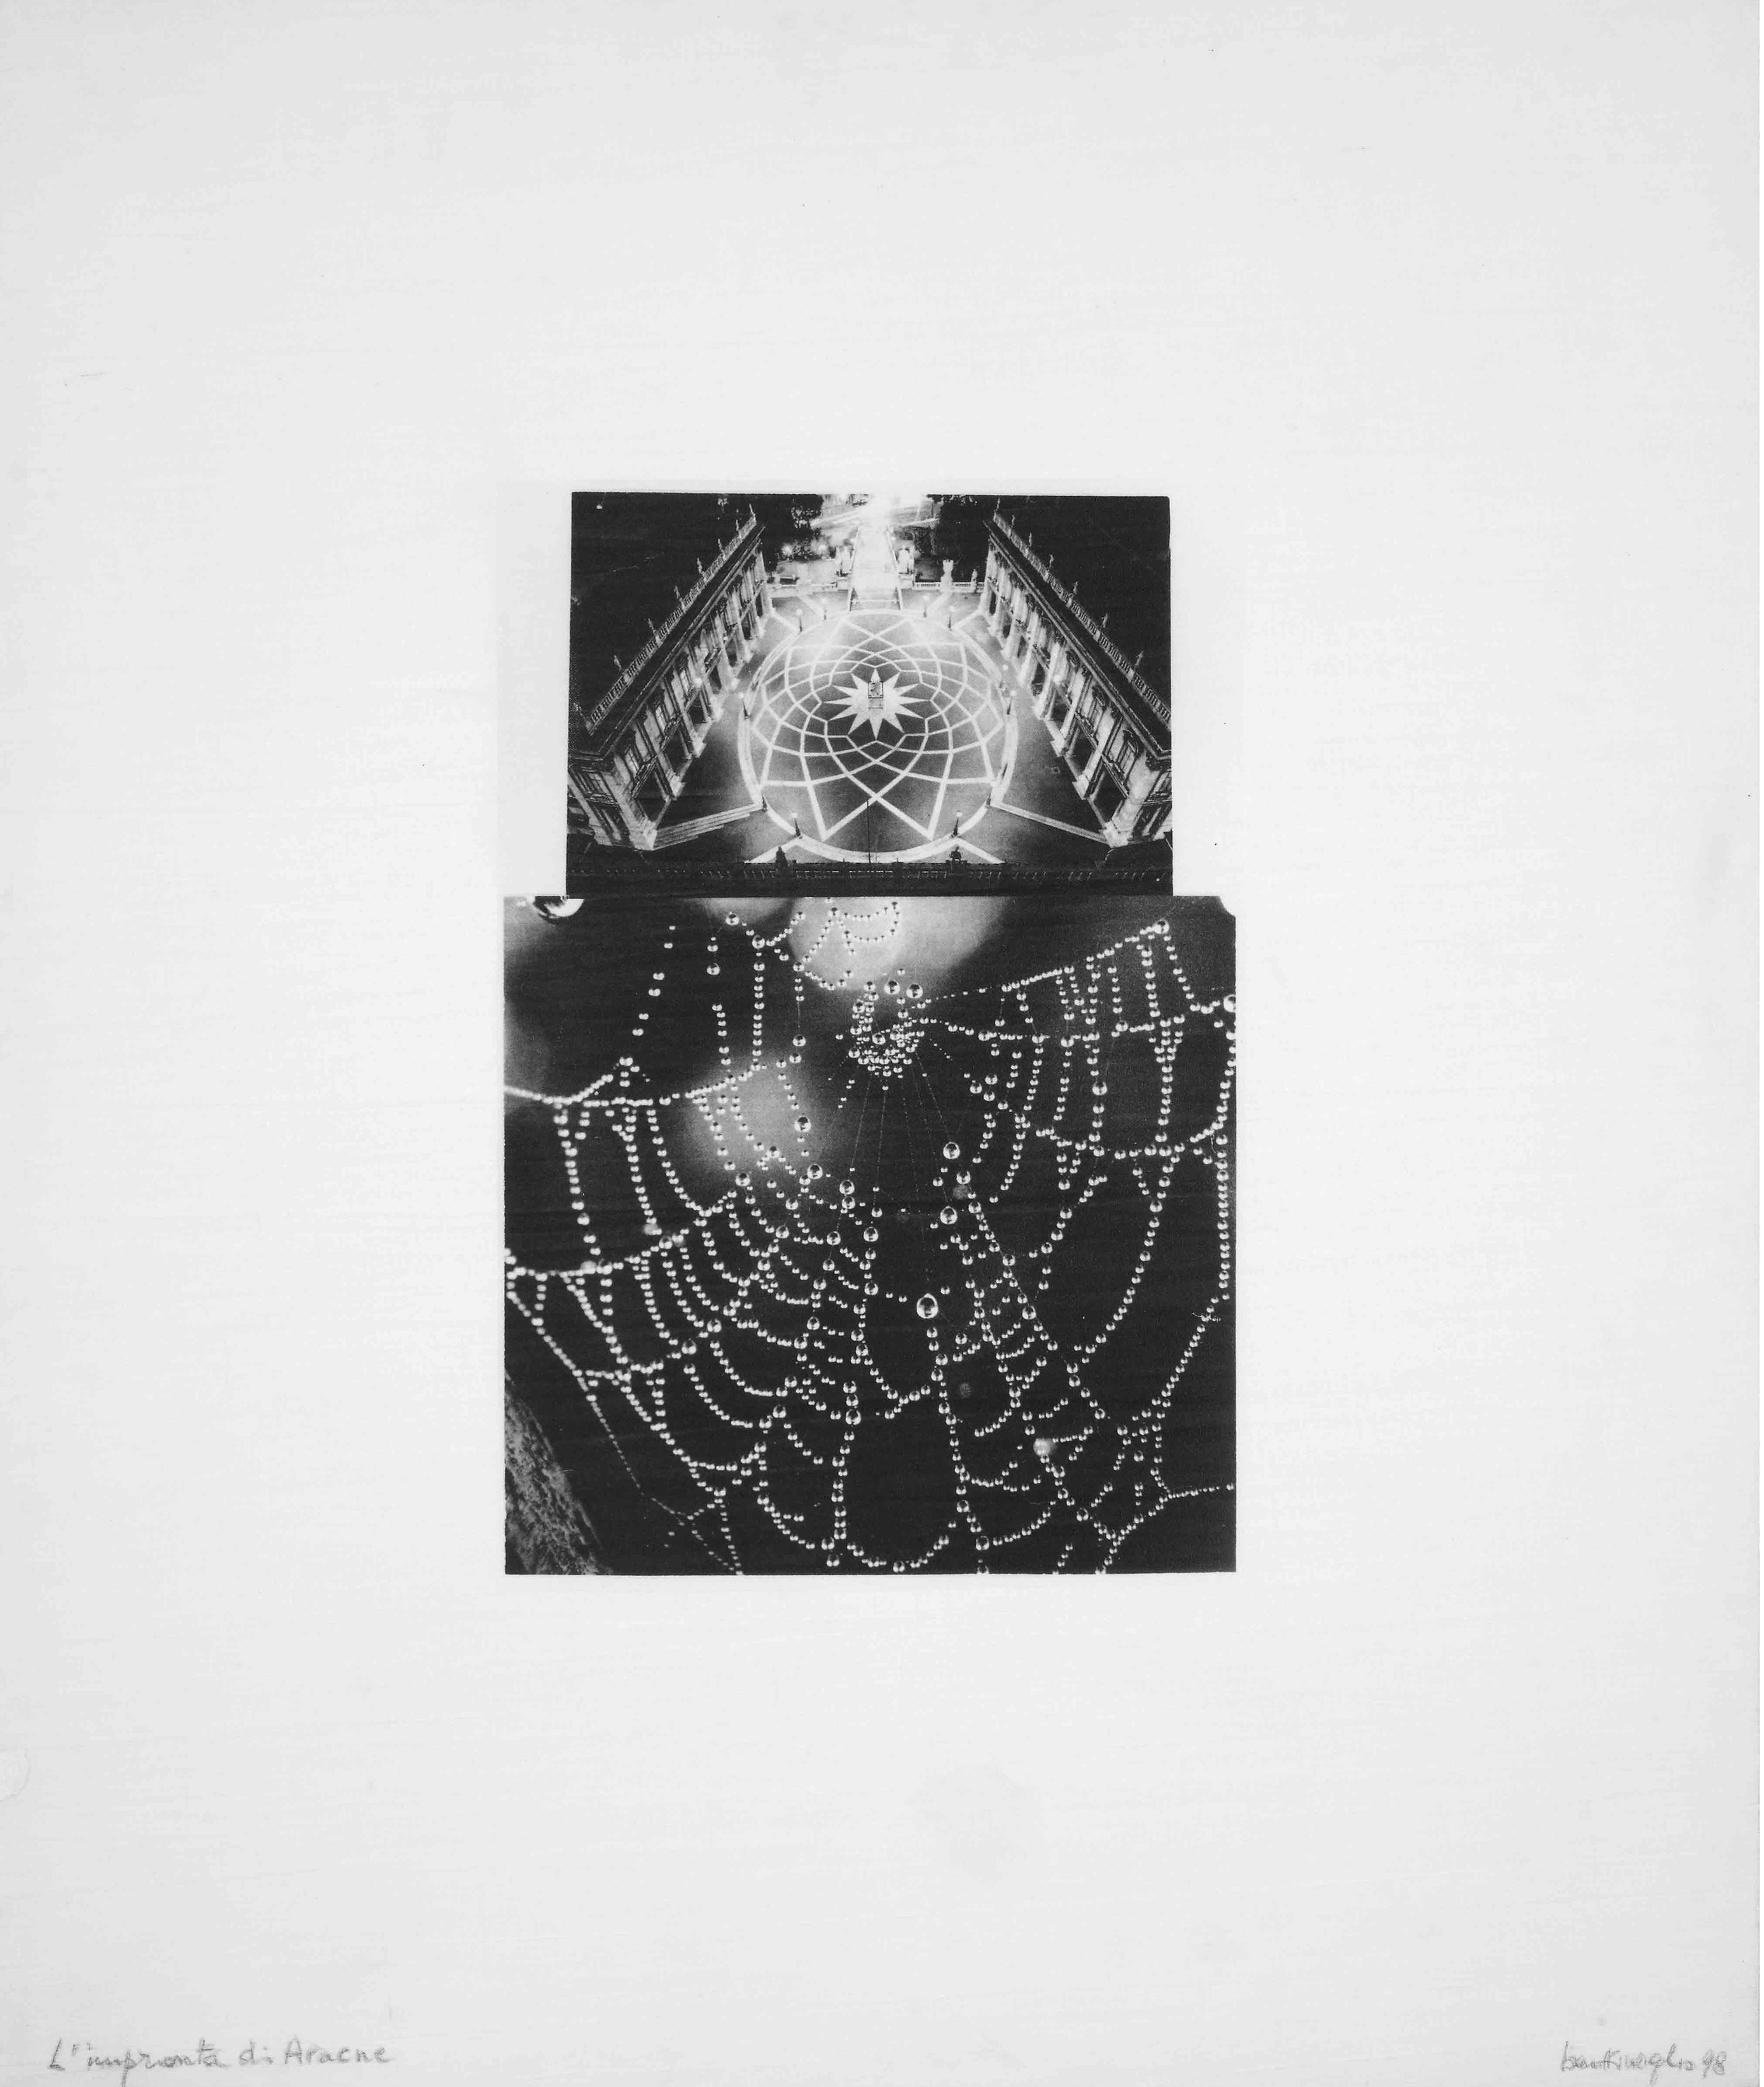 L'impronta di Aracne, 1978-1998
Fotocollage stampato su tela